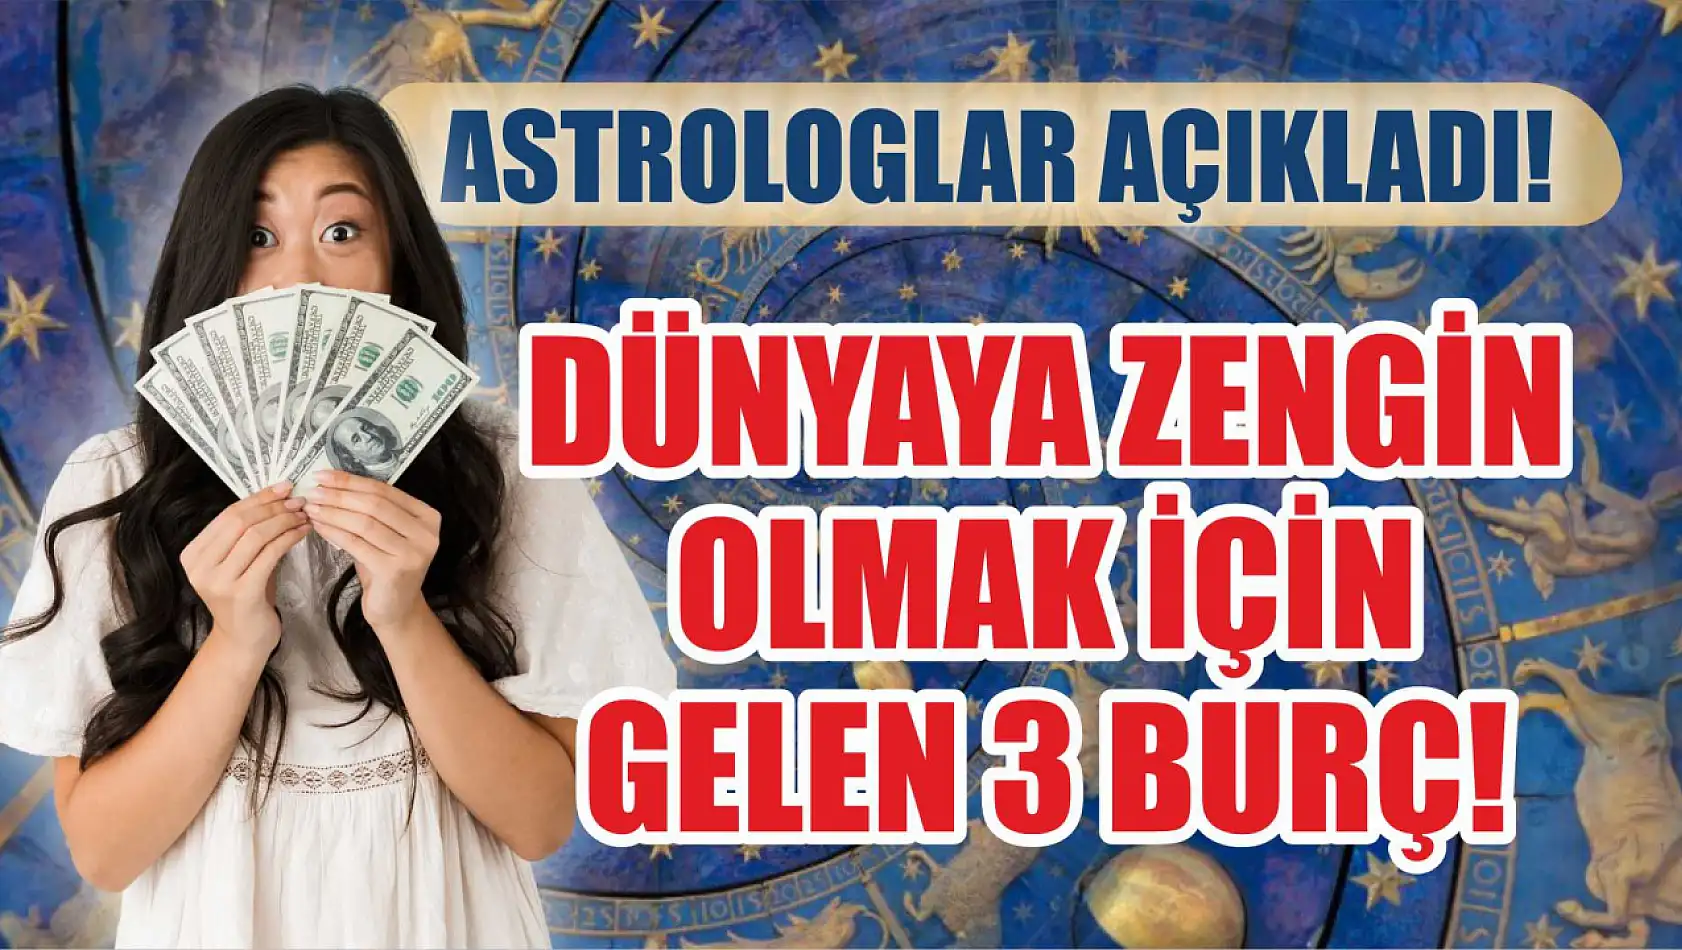 Dünyaya zengin olmak için gelen 3 burç! Astrologlar açıkladı!